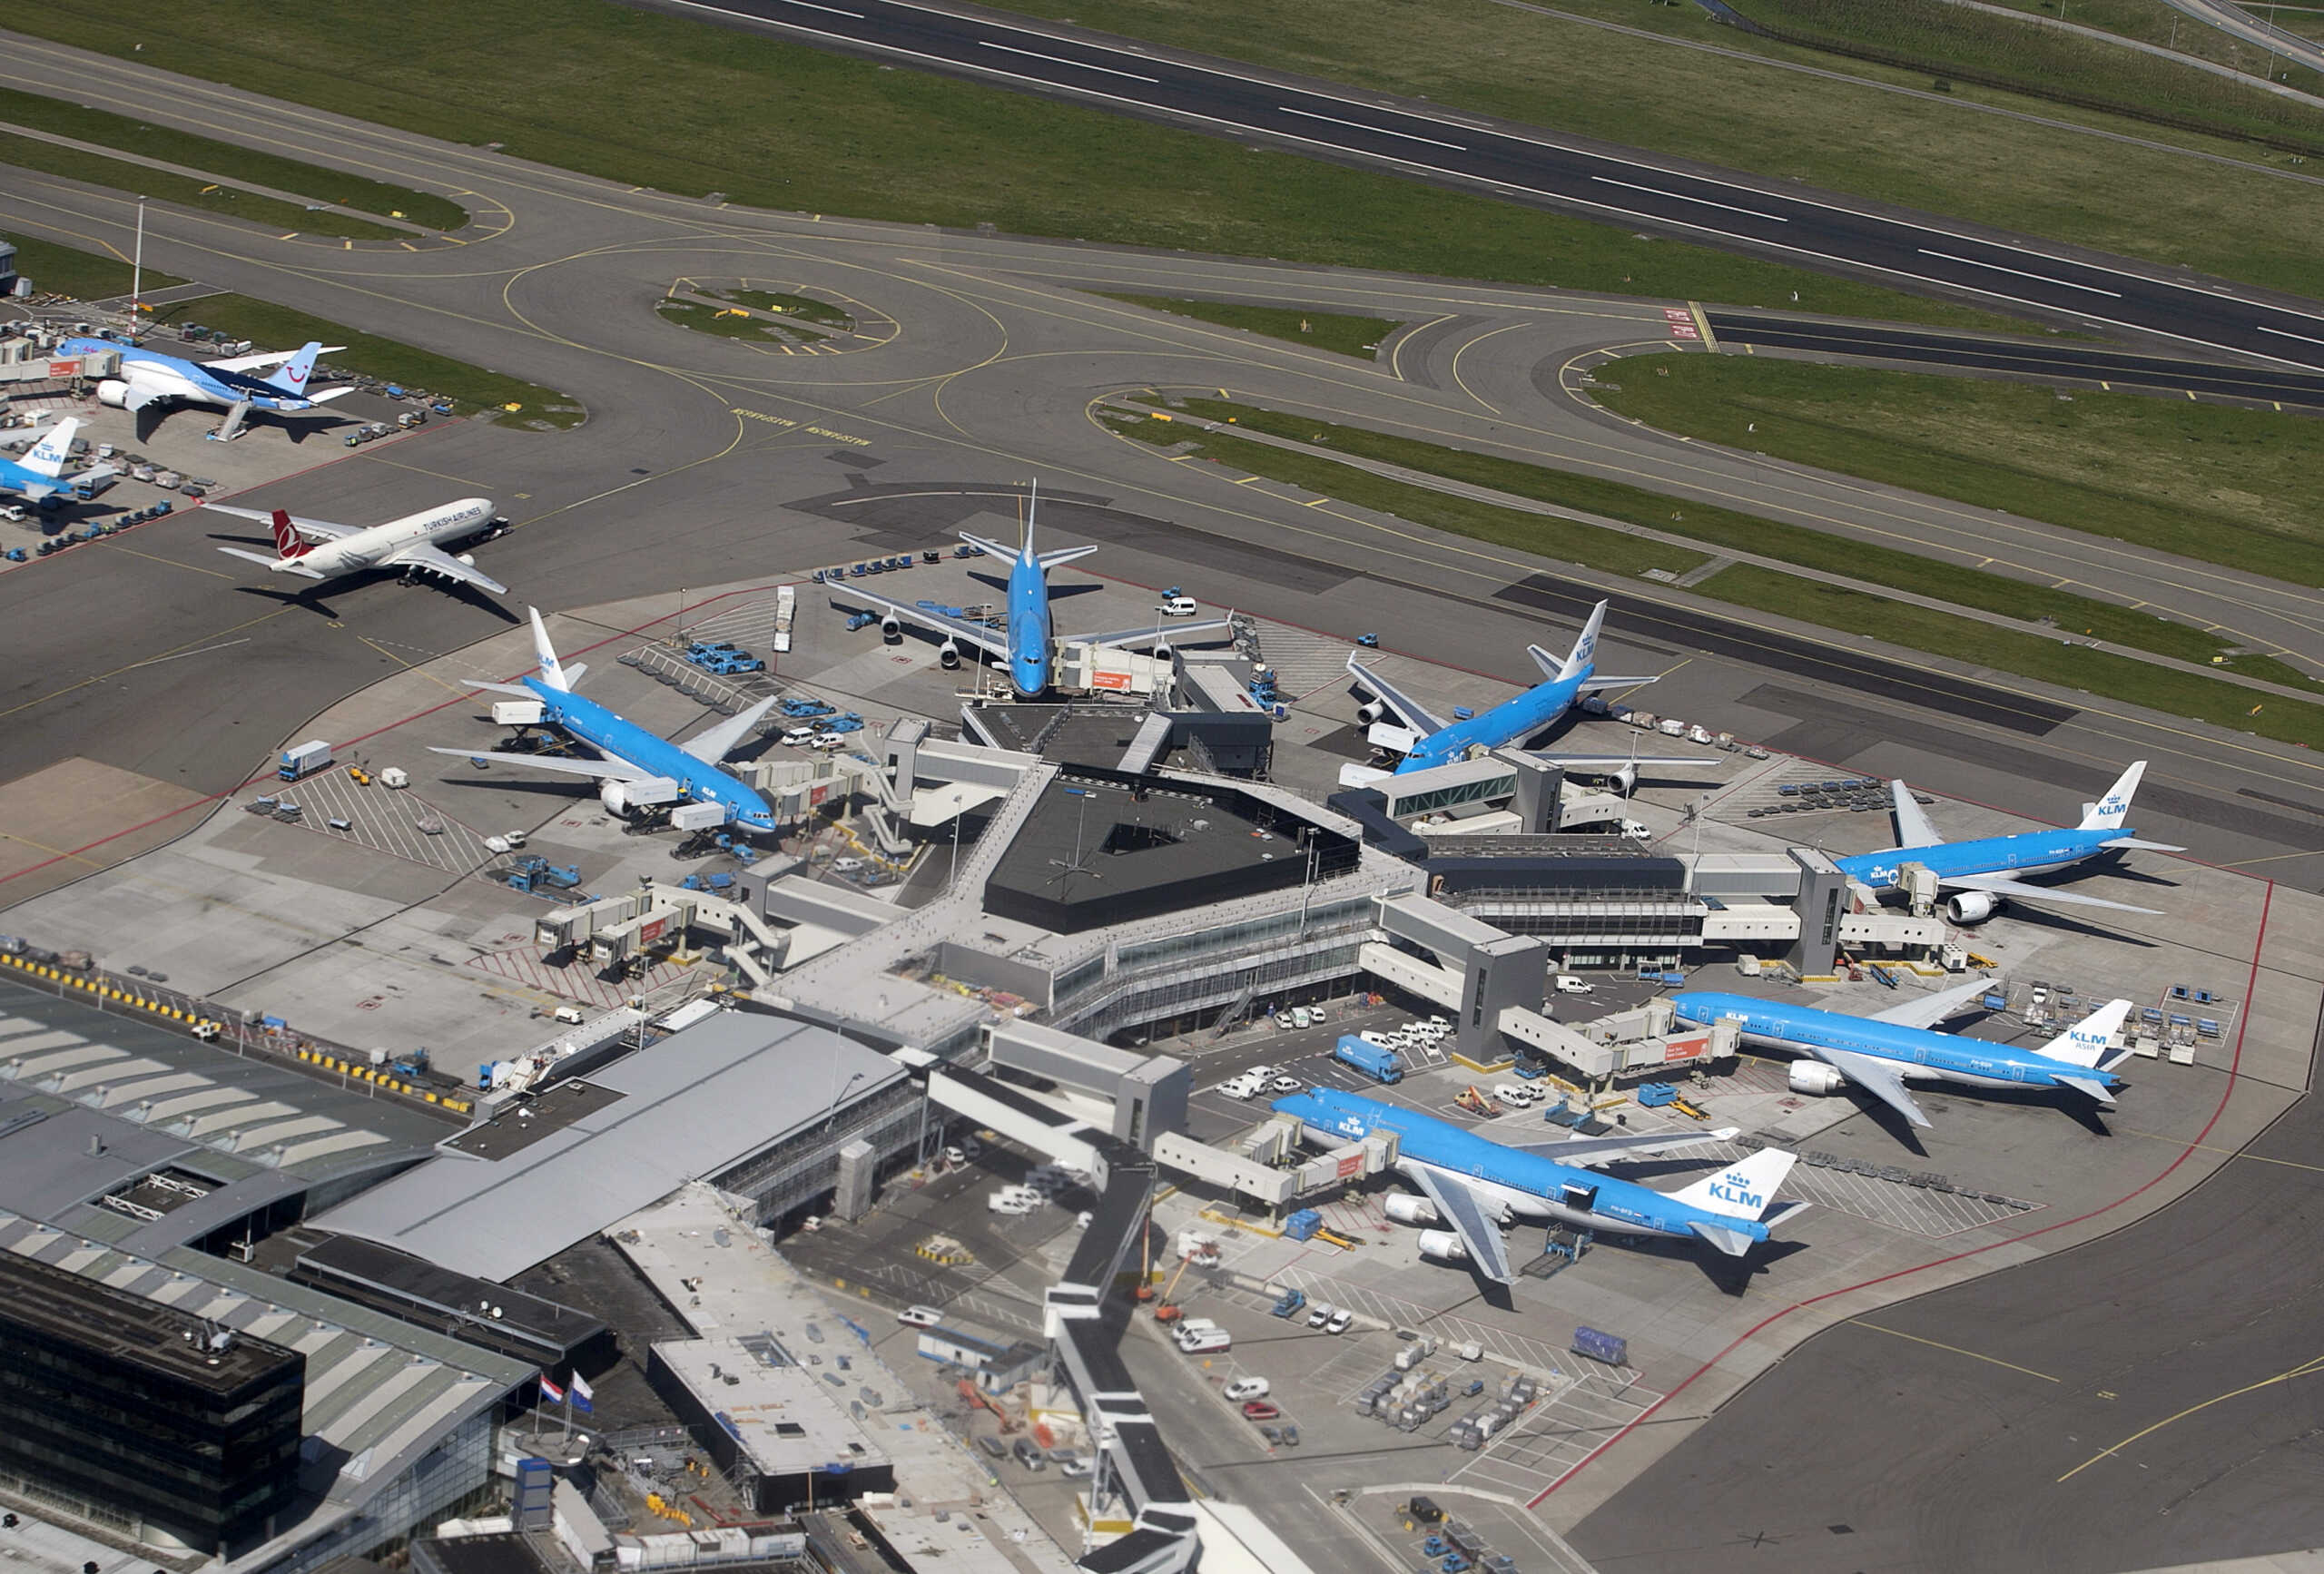 Άμστερνταμ: Ένας νεκρός στο αεροδρόμιο Σίπχολ – Τον «ρούφηξε» κινητήρας αεροσκάφους της KLM